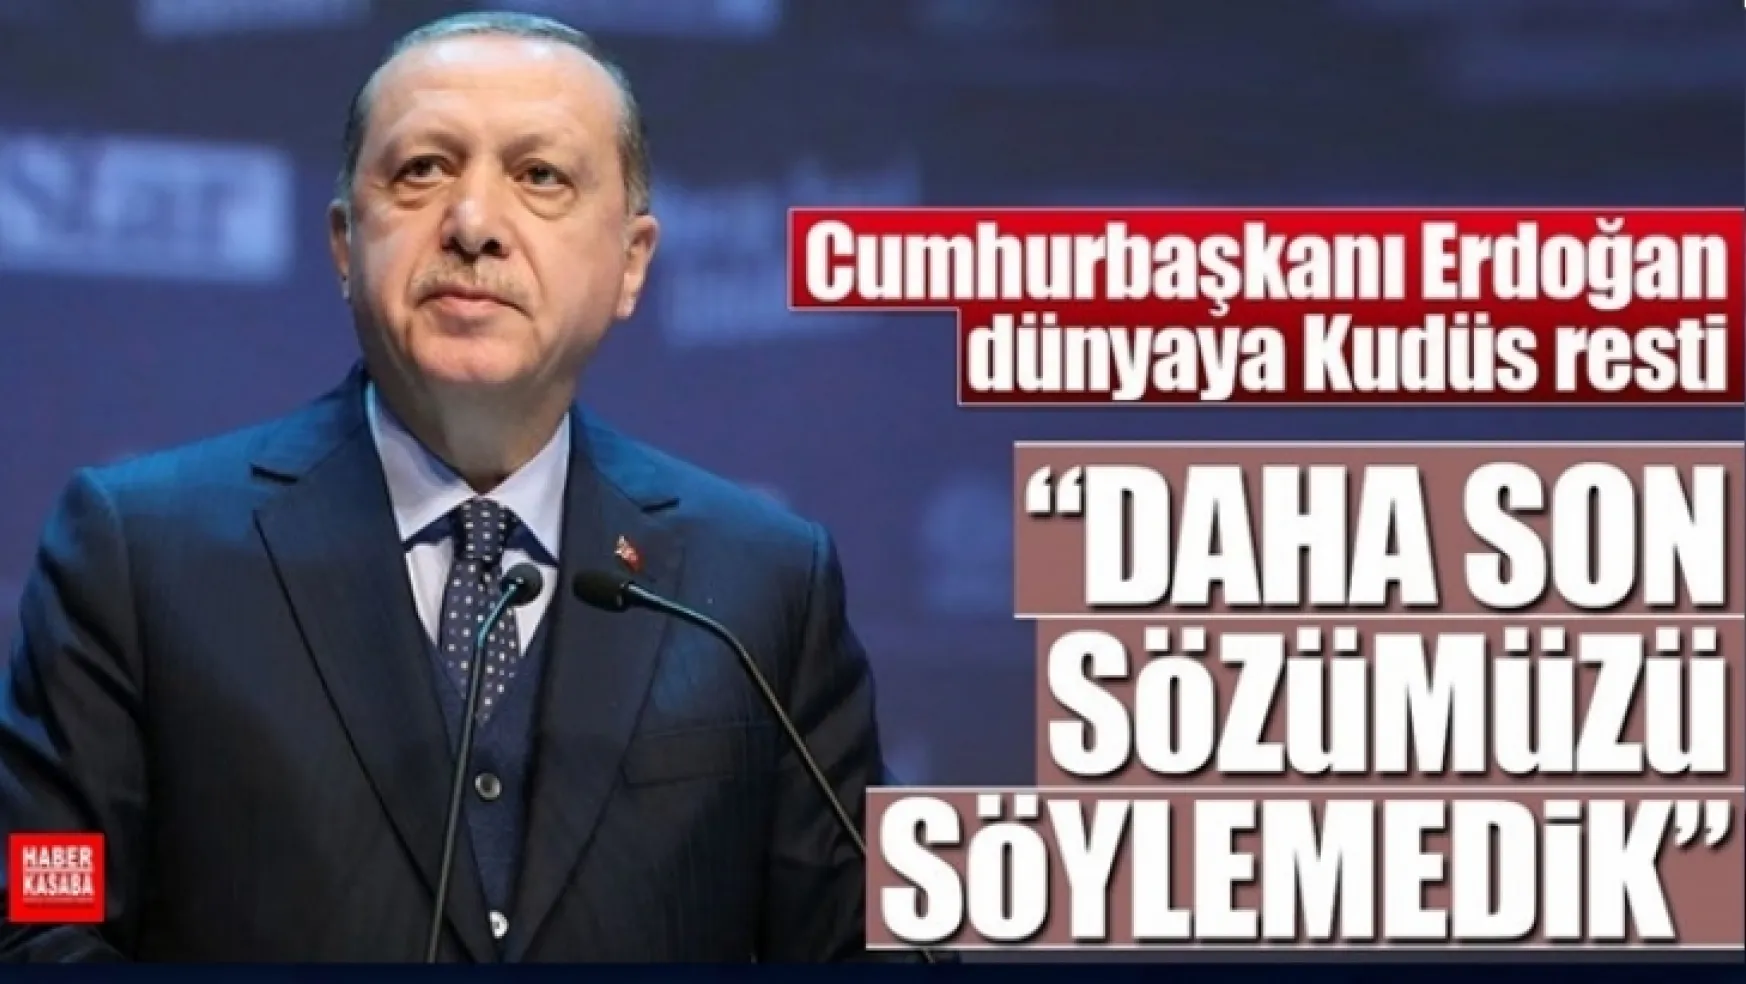 Erdoğan: Türk milleti olarak daha son sözümüzü söylemedik